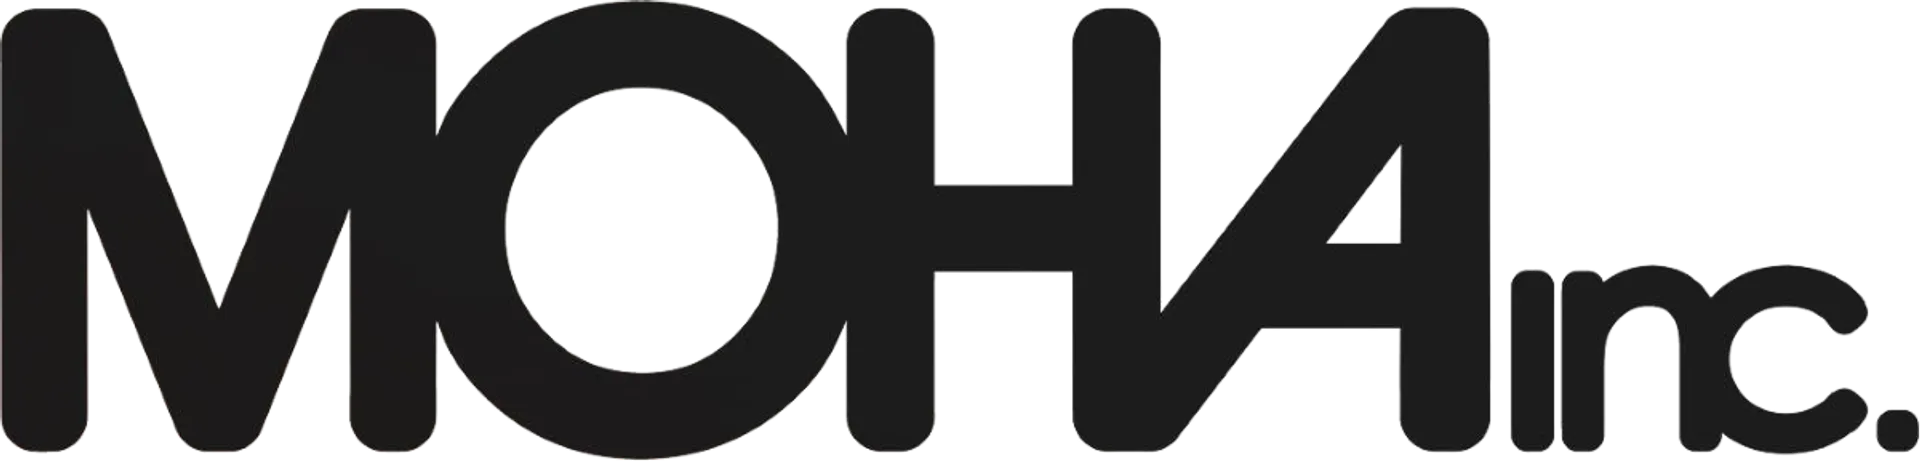 MOHA logo